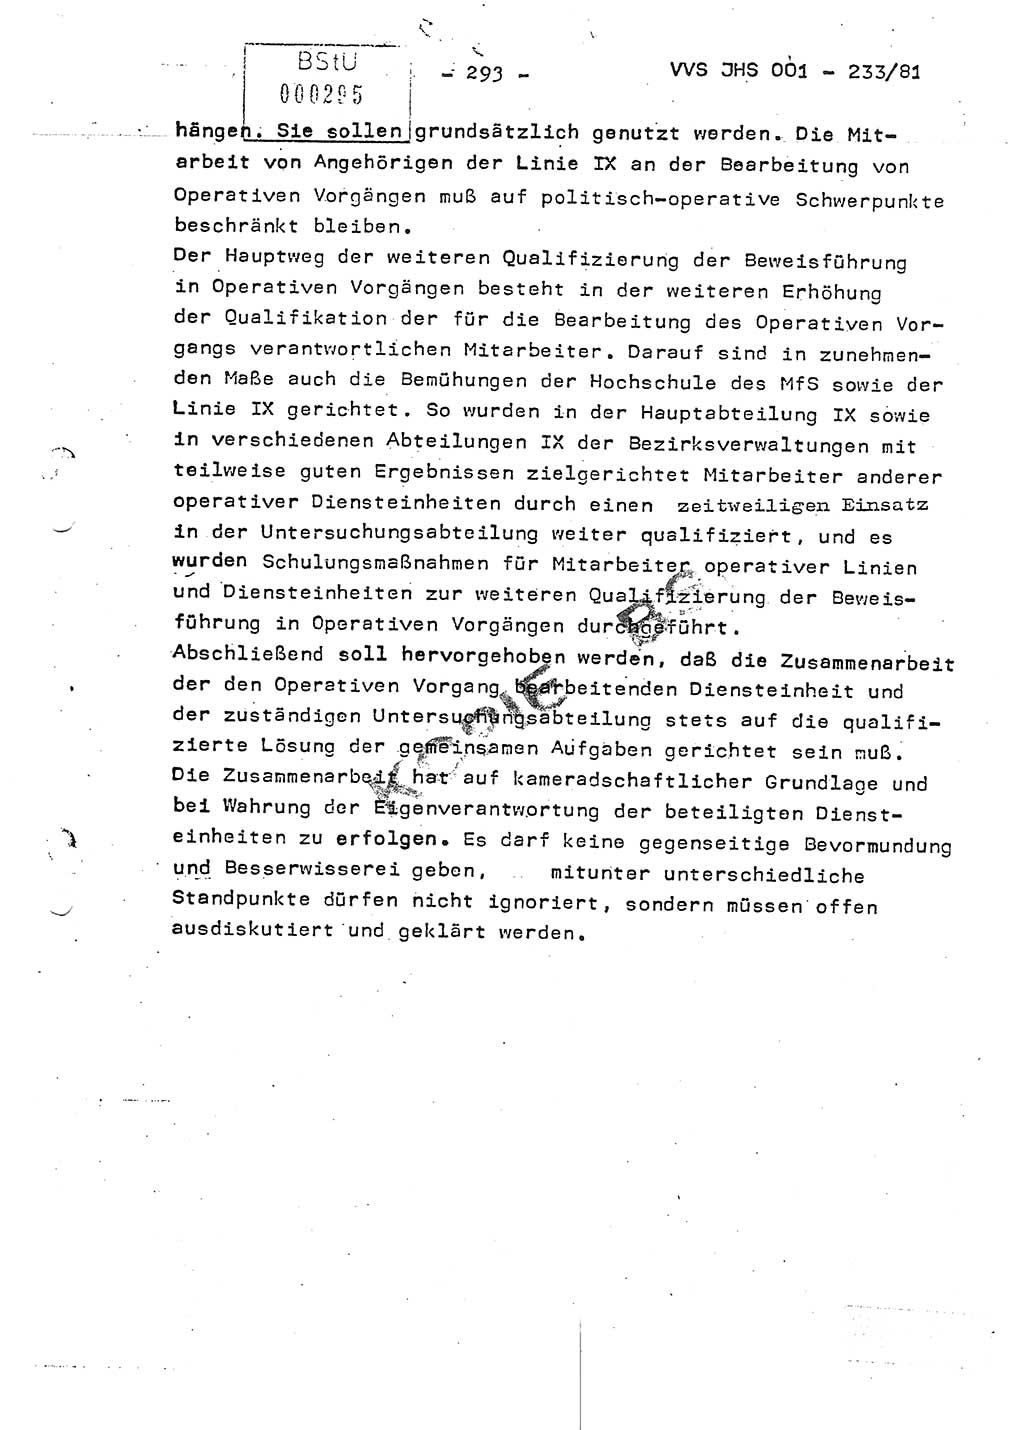 Dissertation Oberstleutnant Horst Zank (JHS), Oberstleutnant Dr. Karl-Heinz Knoblauch (JHS), Oberstleutnant Gustav-Adolf Kowalewski (HA Ⅸ), Oberstleutnant Wolfgang Plötner (HA Ⅸ), Ministerium für Staatssicherheit (MfS) [Deutsche Demokratische Republik (DDR)], Juristische Hochschule (JHS), Vertrauliche Verschlußsache (VVS) o001-233/81, Potsdam 1981, Blatt 293 (Diss. MfS DDR JHS VVS o001-233/81 1981, Bl. 293)